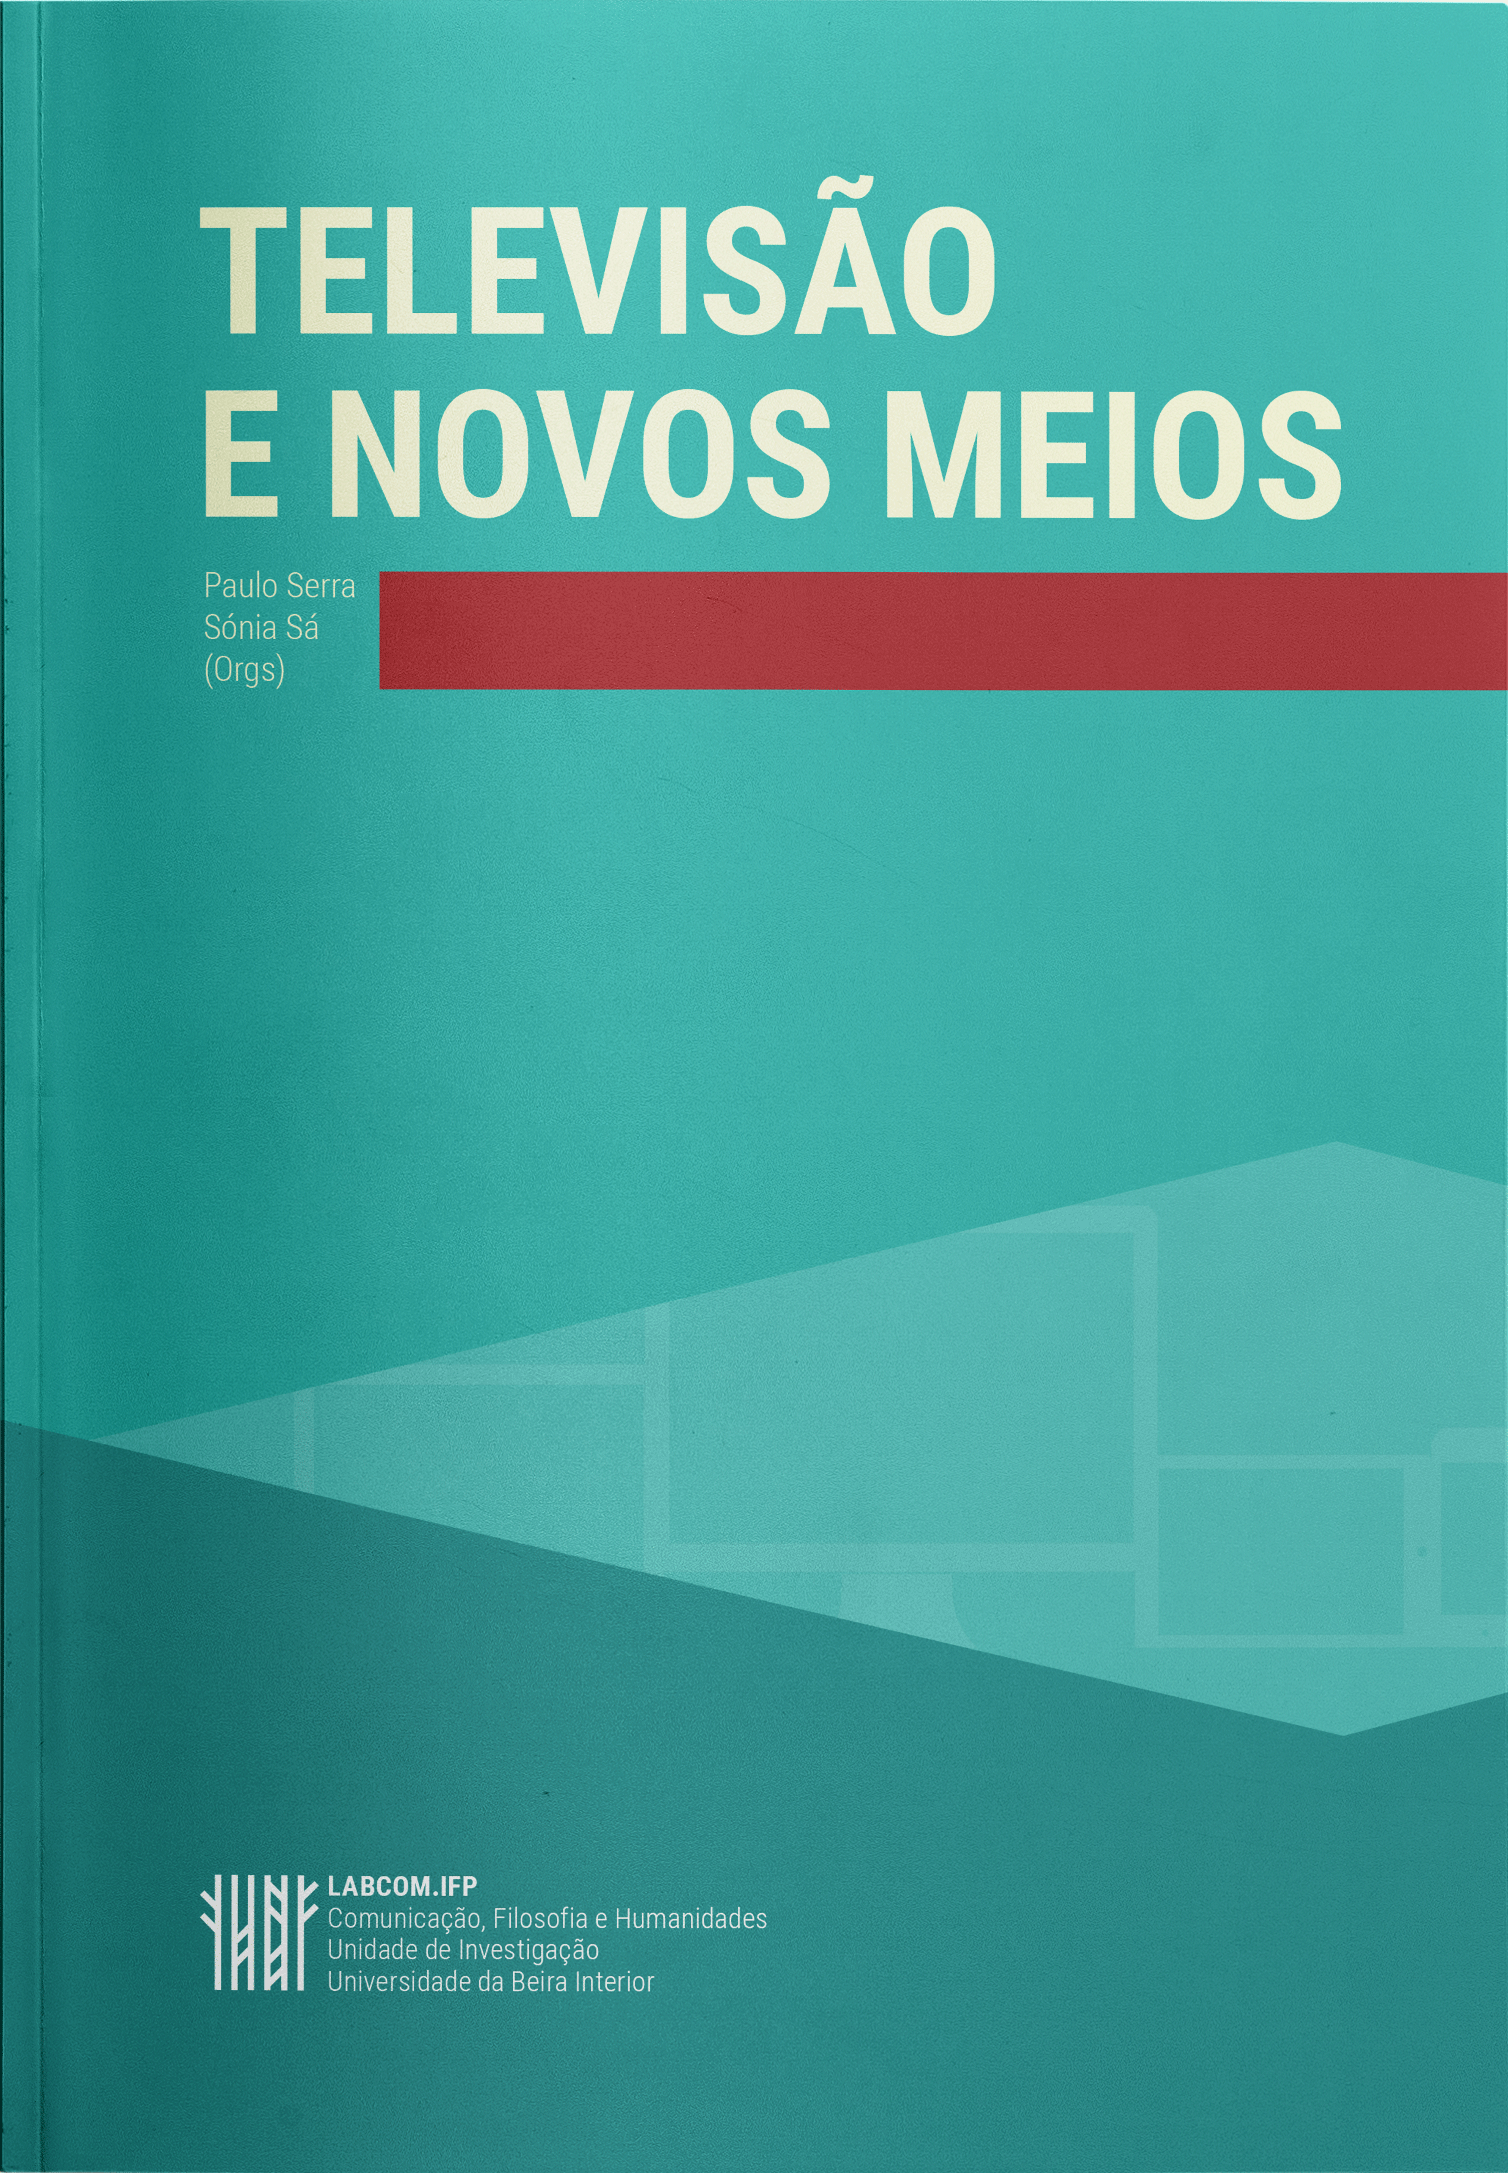 Capa: Paulo Serra e Sónia Sá (Orgs.) (2017) Televisão e Novos Meios. Communication  +  Philosophy  +  Humanities. .